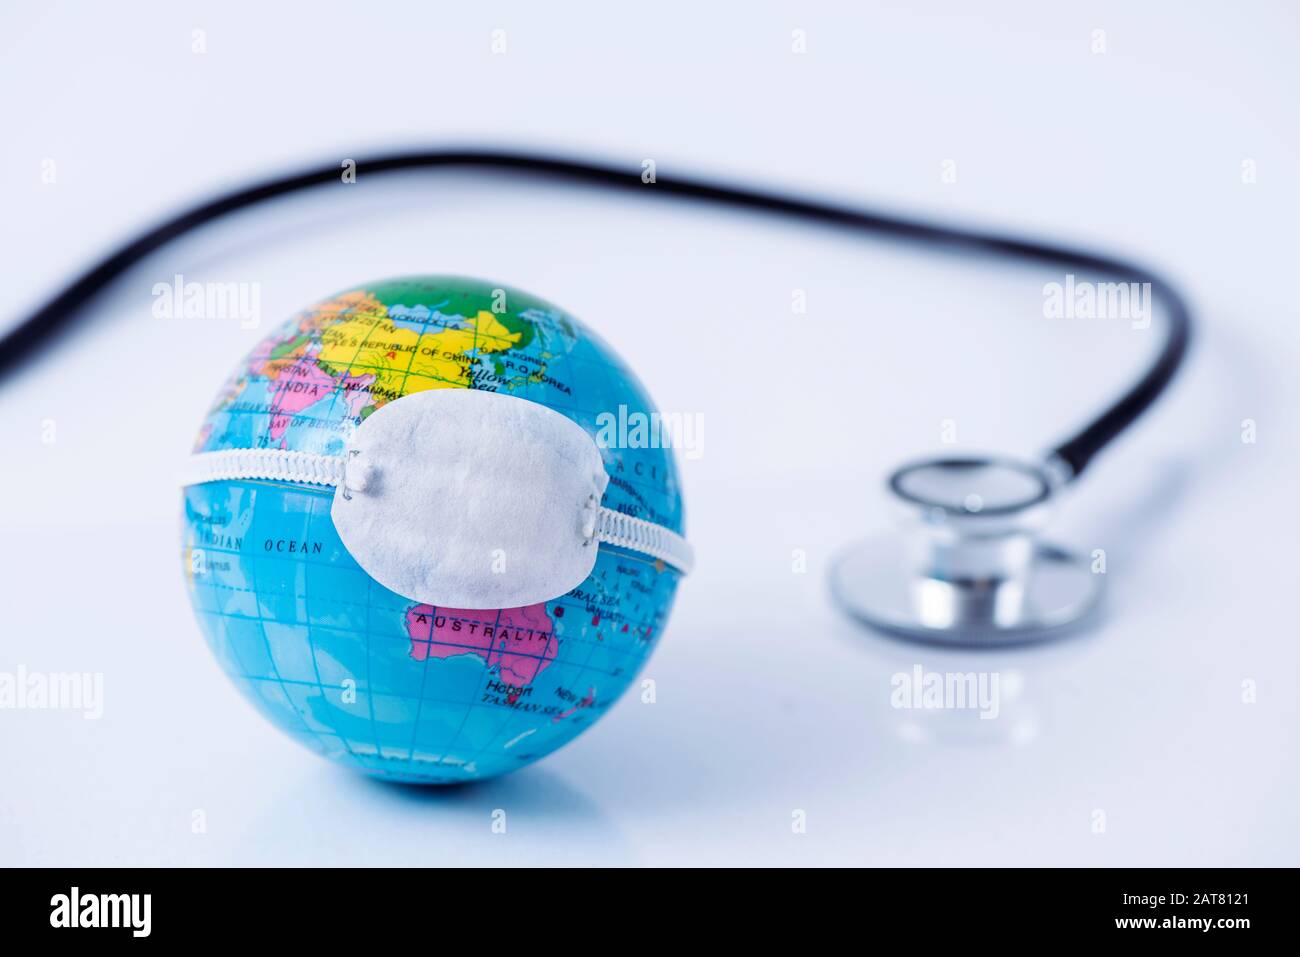 Primo piano di un globo terrestre con una maschera protettiva posta sulla Cina, raffigurante la recente epidemia di coronavirus, accanto a uno stetoscopio Foto Stock